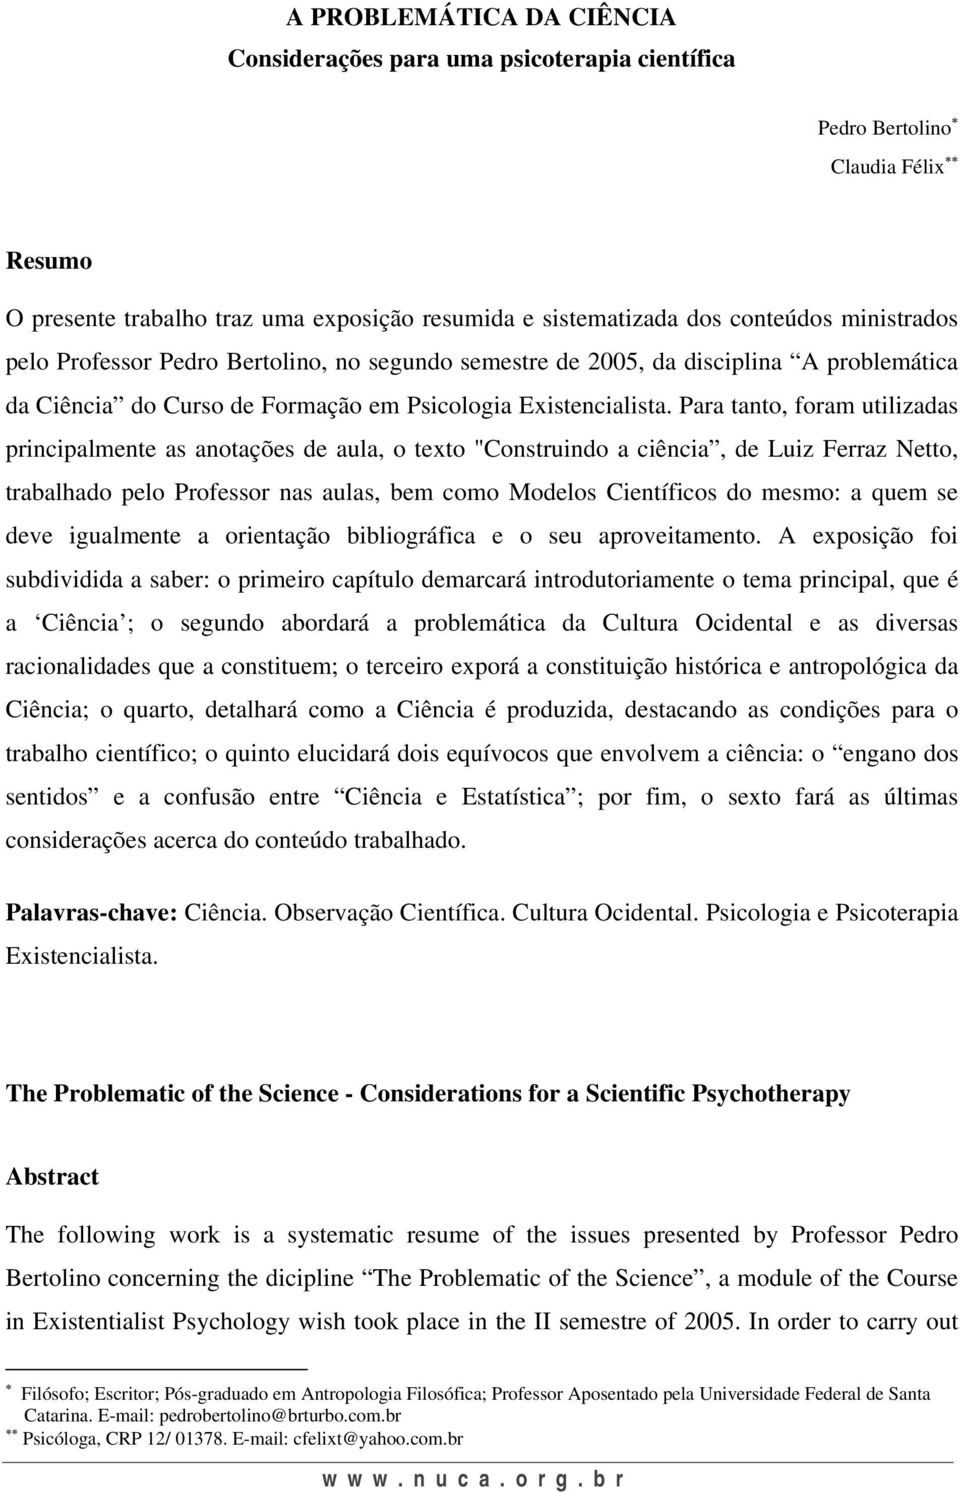 Para tanto, foram utilizadas principalmente as anotações de aula, o texto "Construindo a ciência, de Luiz Ferraz Netto, trabalhado pelo Professor nas aulas, bem como Modelos Científicos do mesmo: a